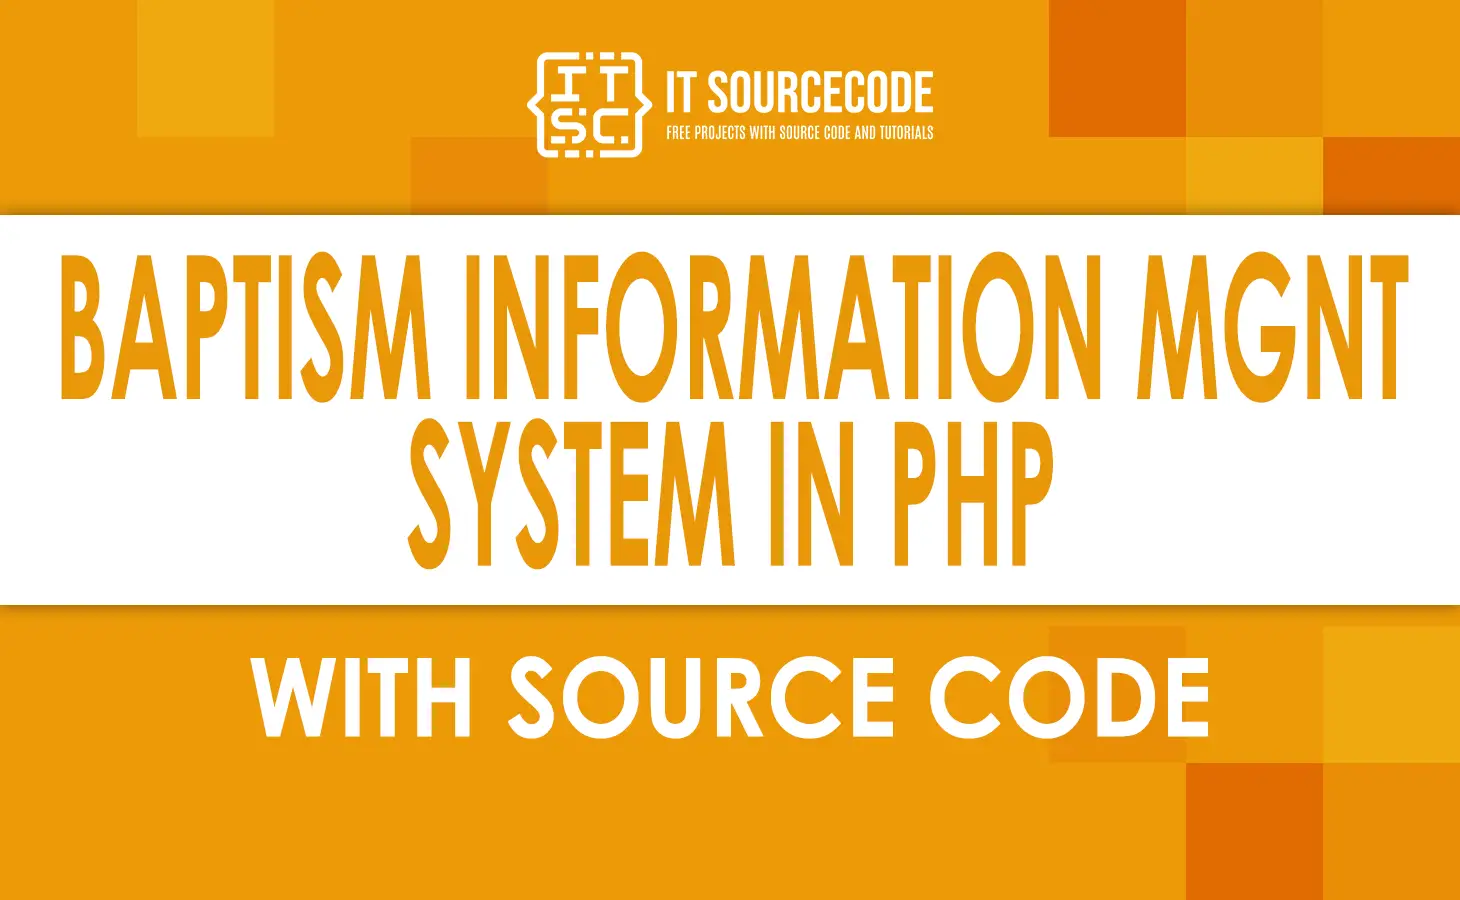 Baptism Information Management System In PHP